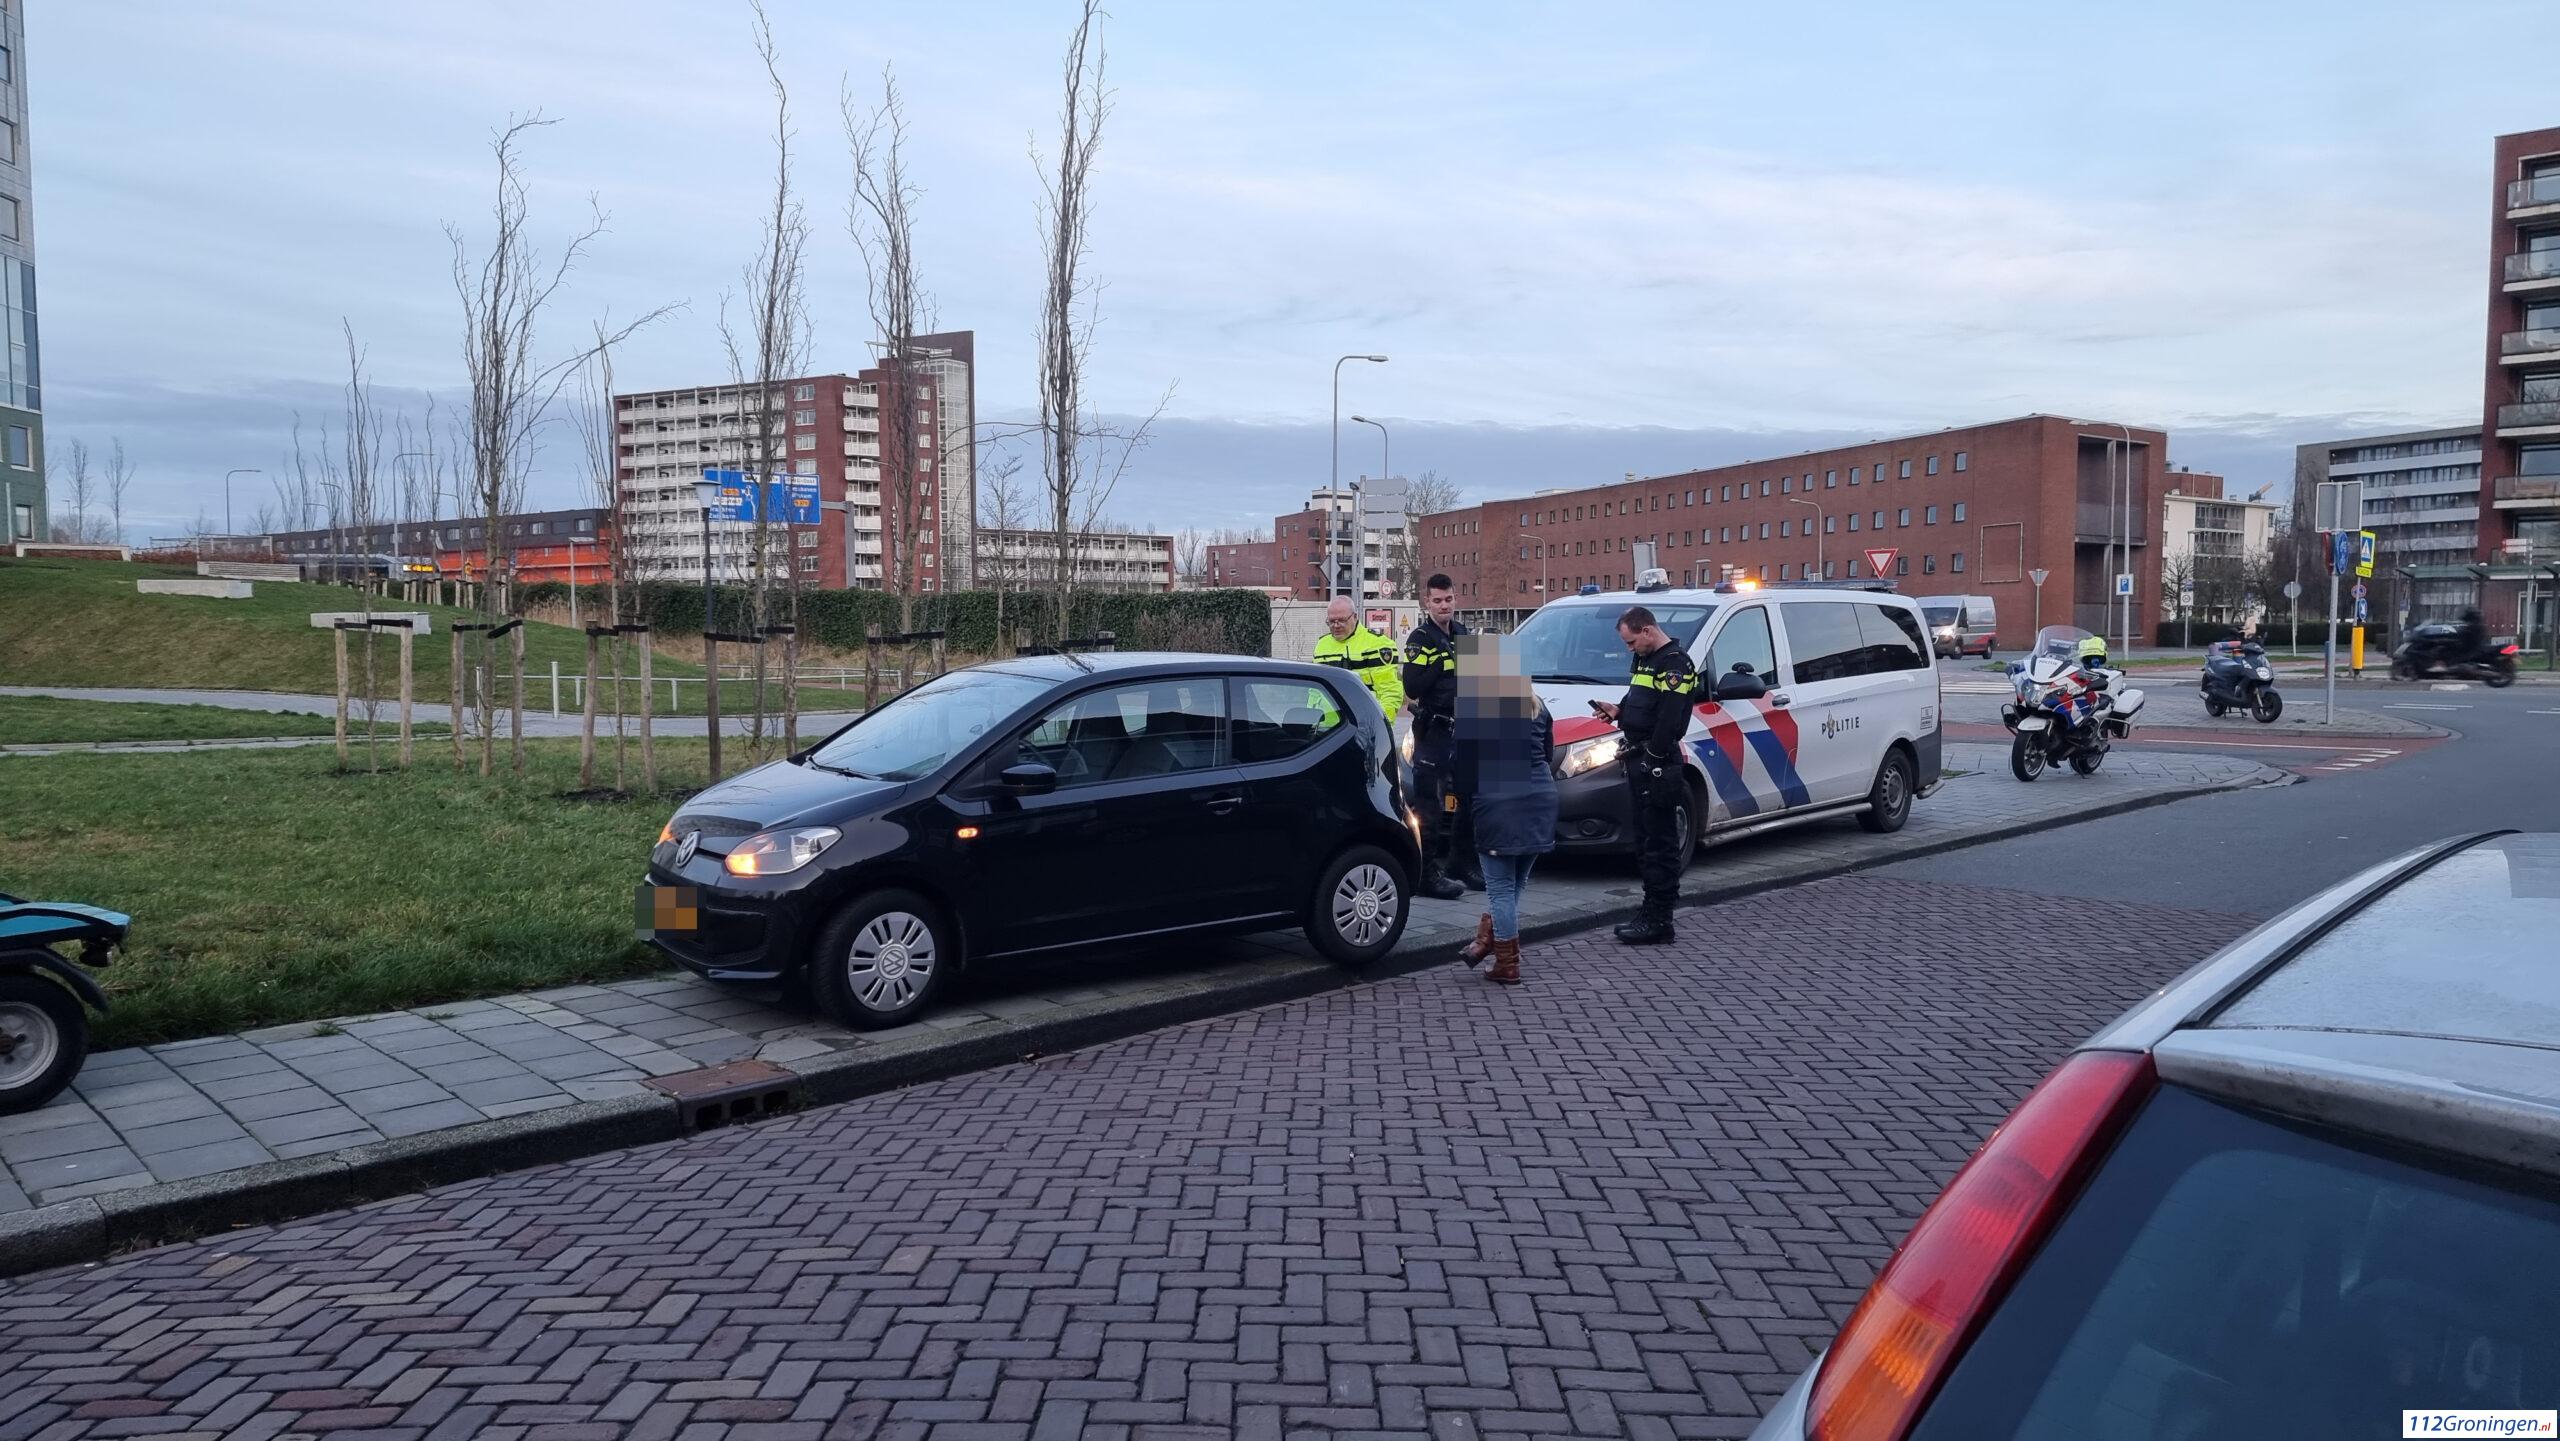 Ongeval Poortstraat Groningen, 1 bestuurder rijdt door.